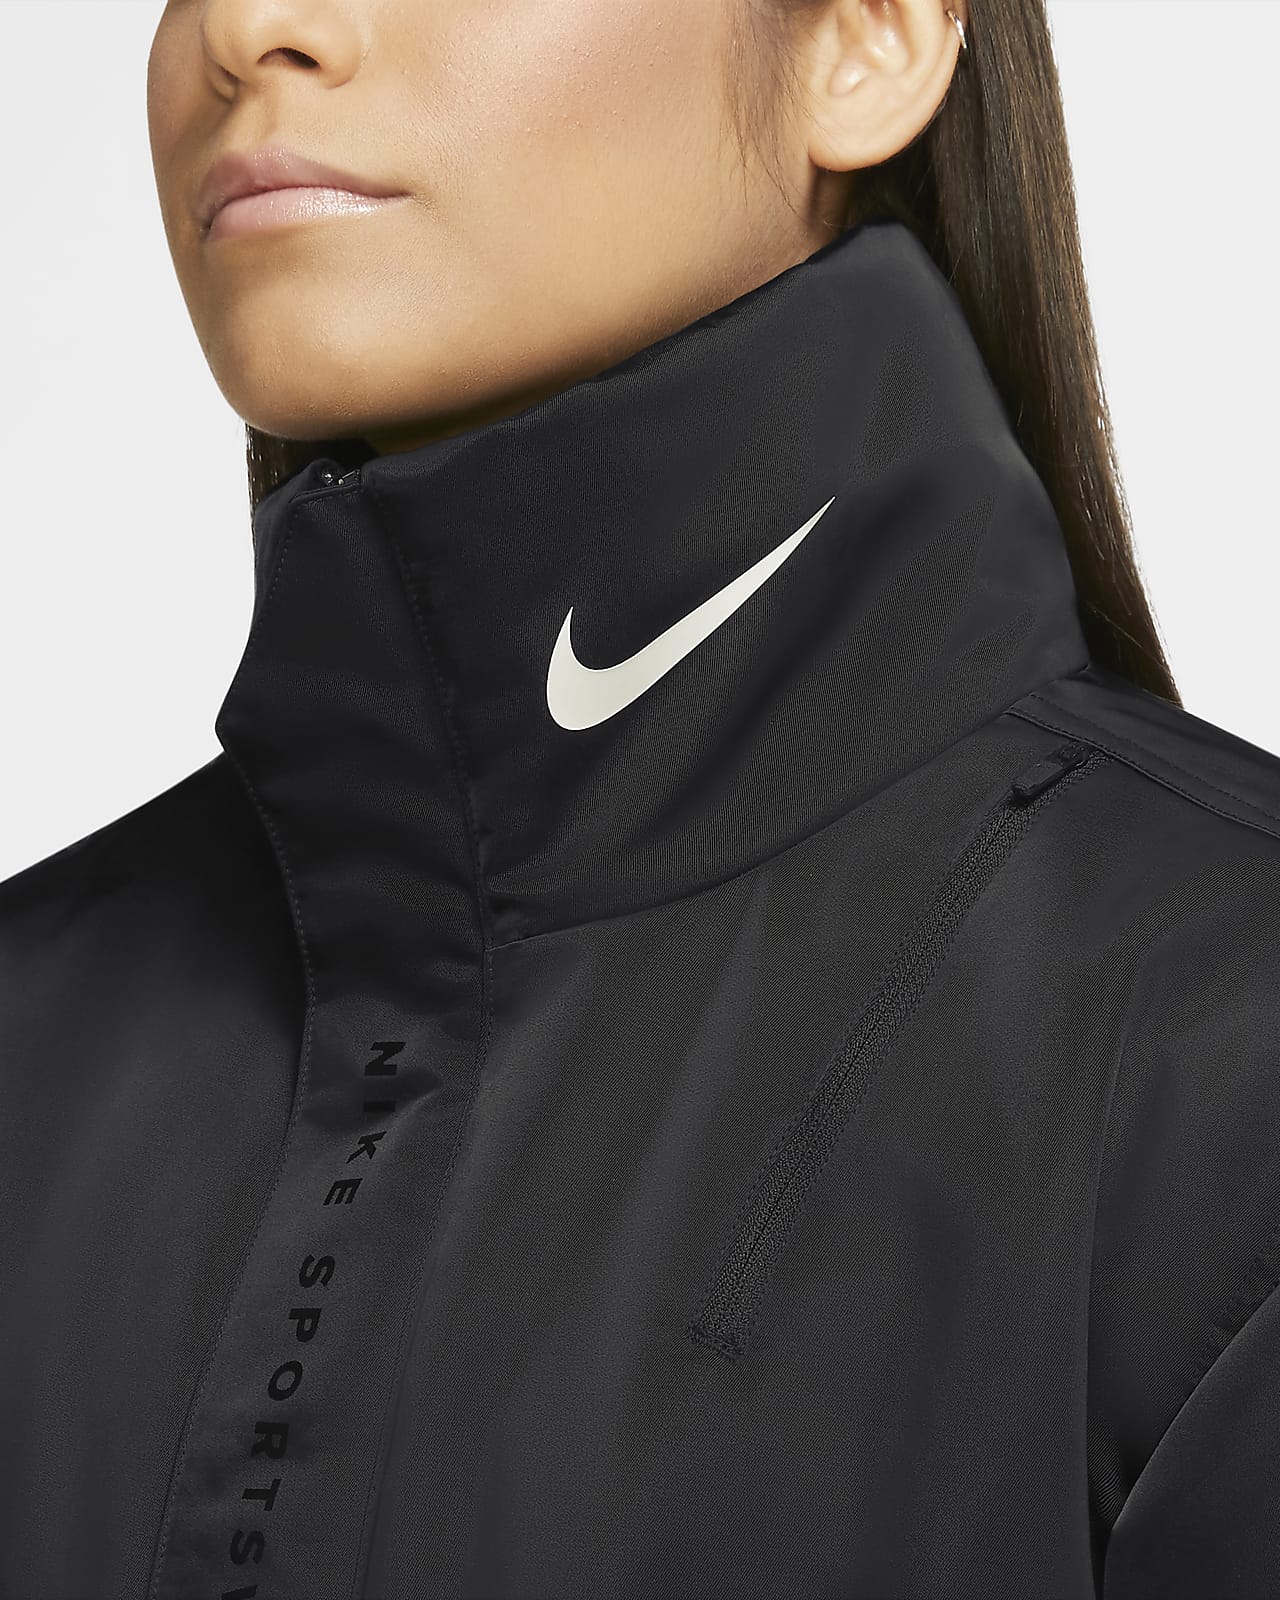 women's jacket nike sportswear synthetic fill